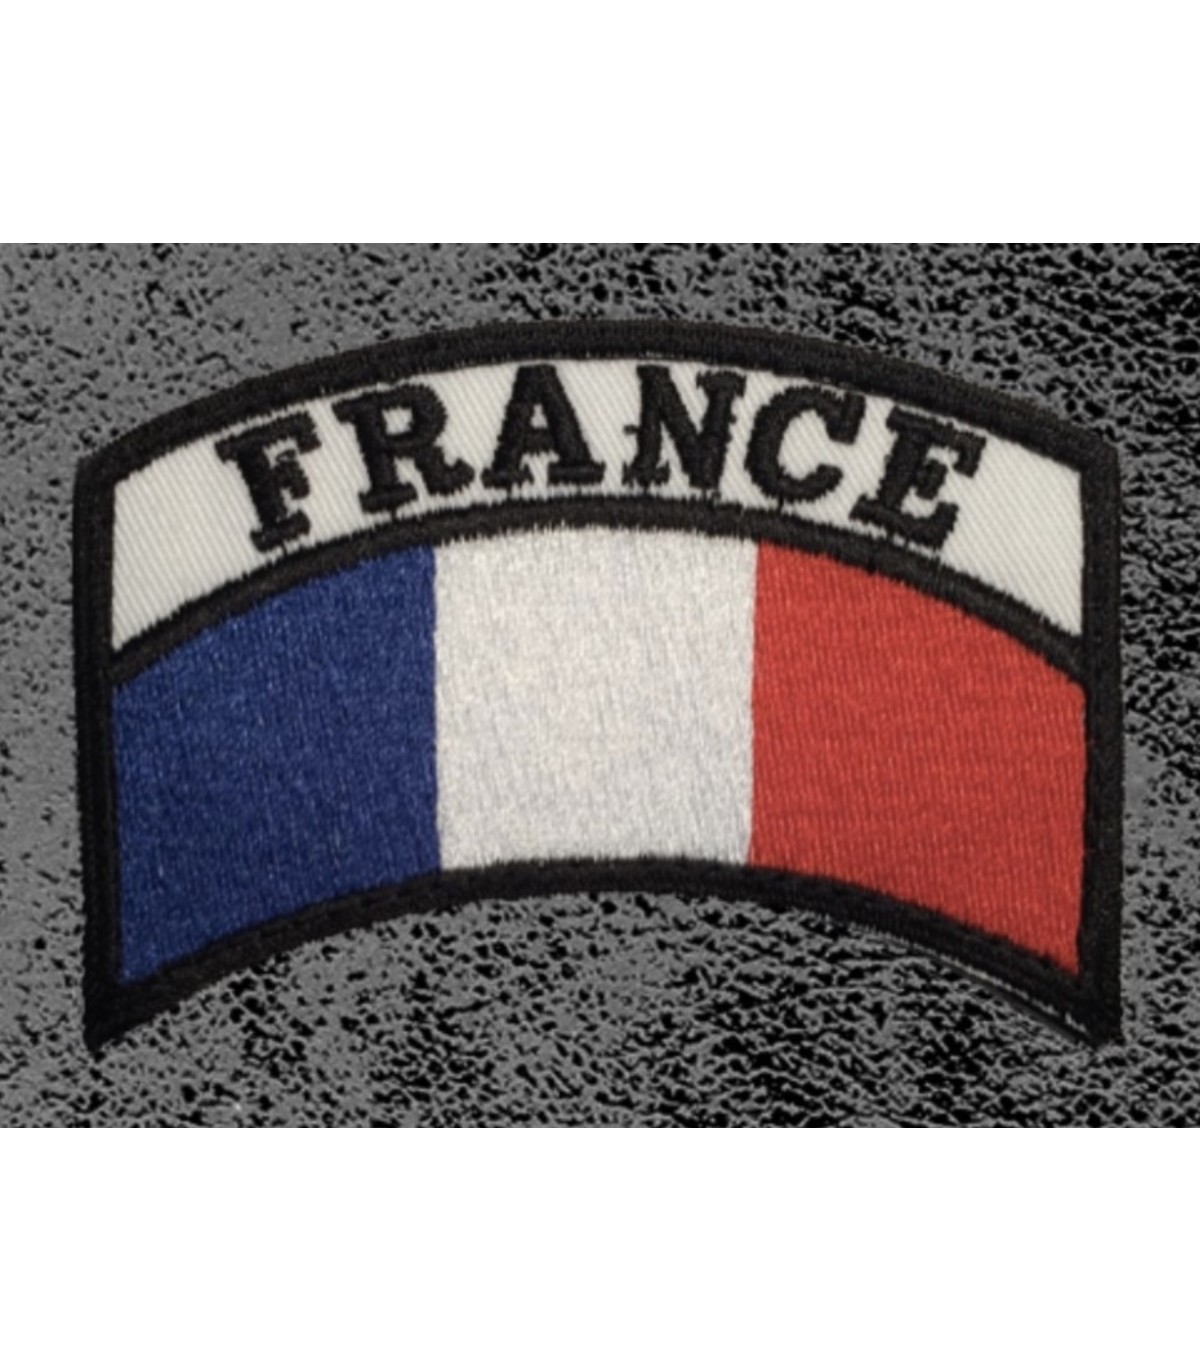 Ecusson de Bras brodé FRANCE ✔️ ECUSSON DE FRANCE